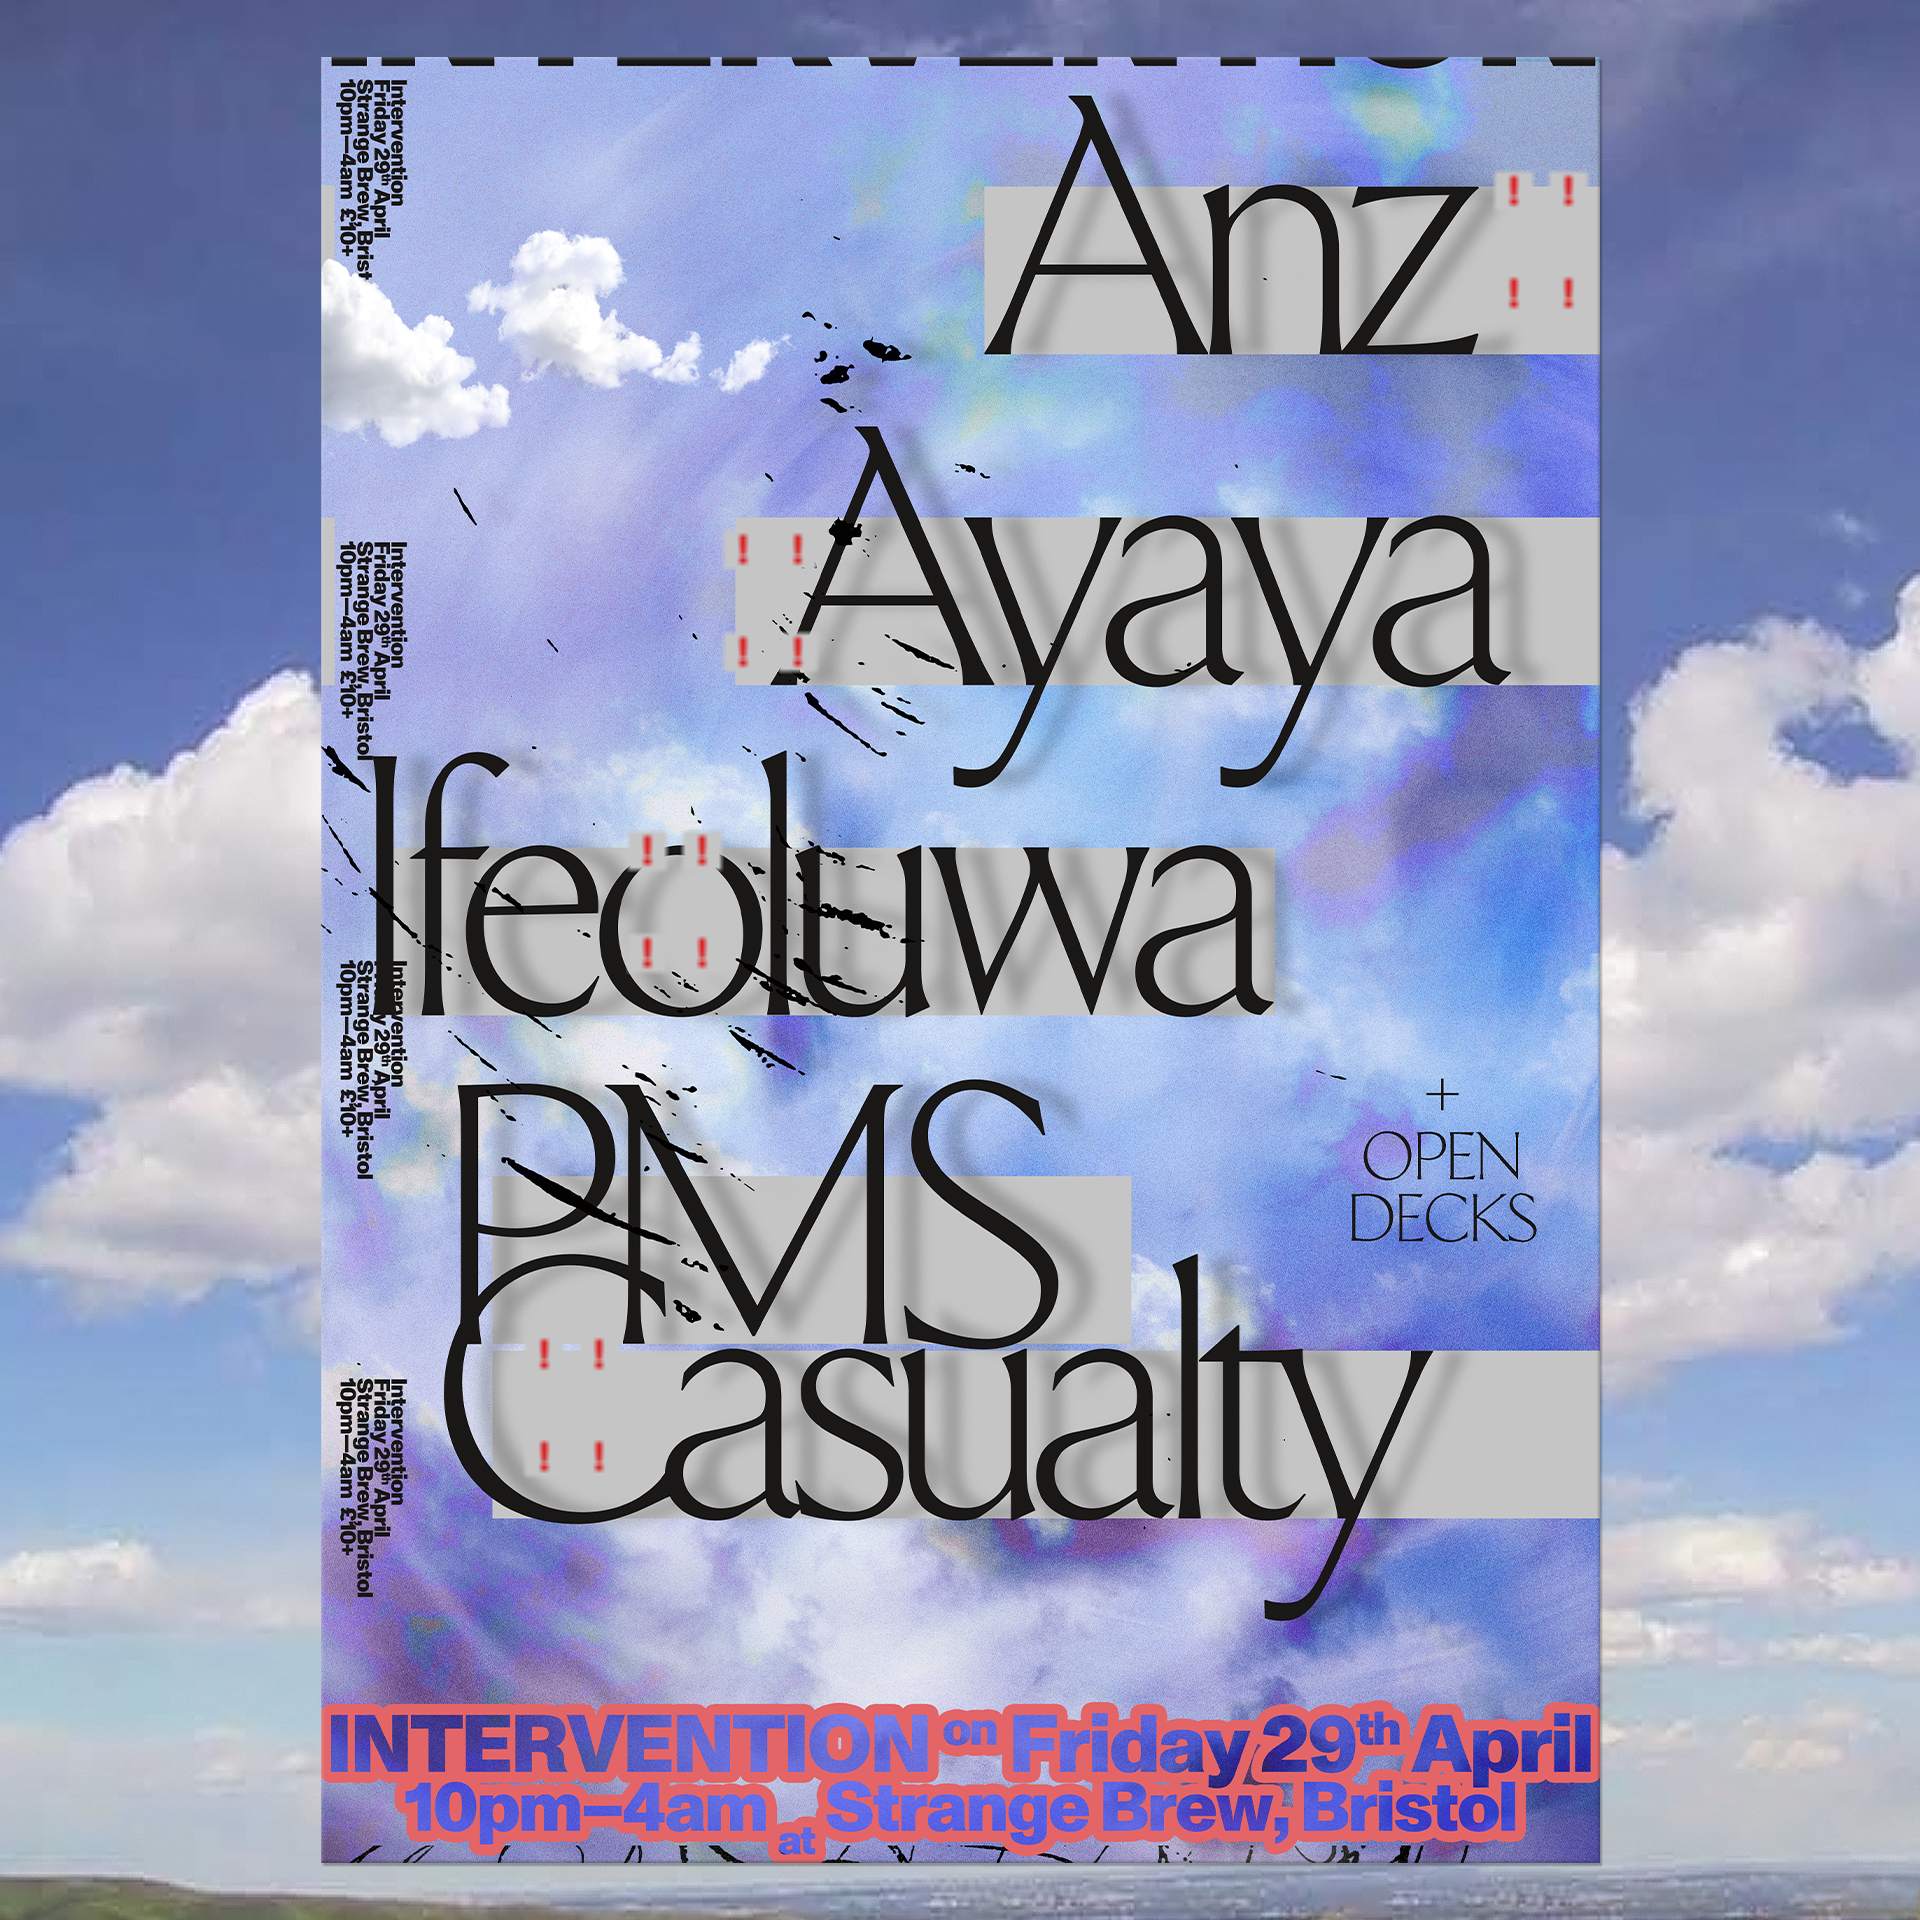 INTERVENTION W/ Anz, Ayaya, Ifeoluwa & PMS Casualty - Página frontal